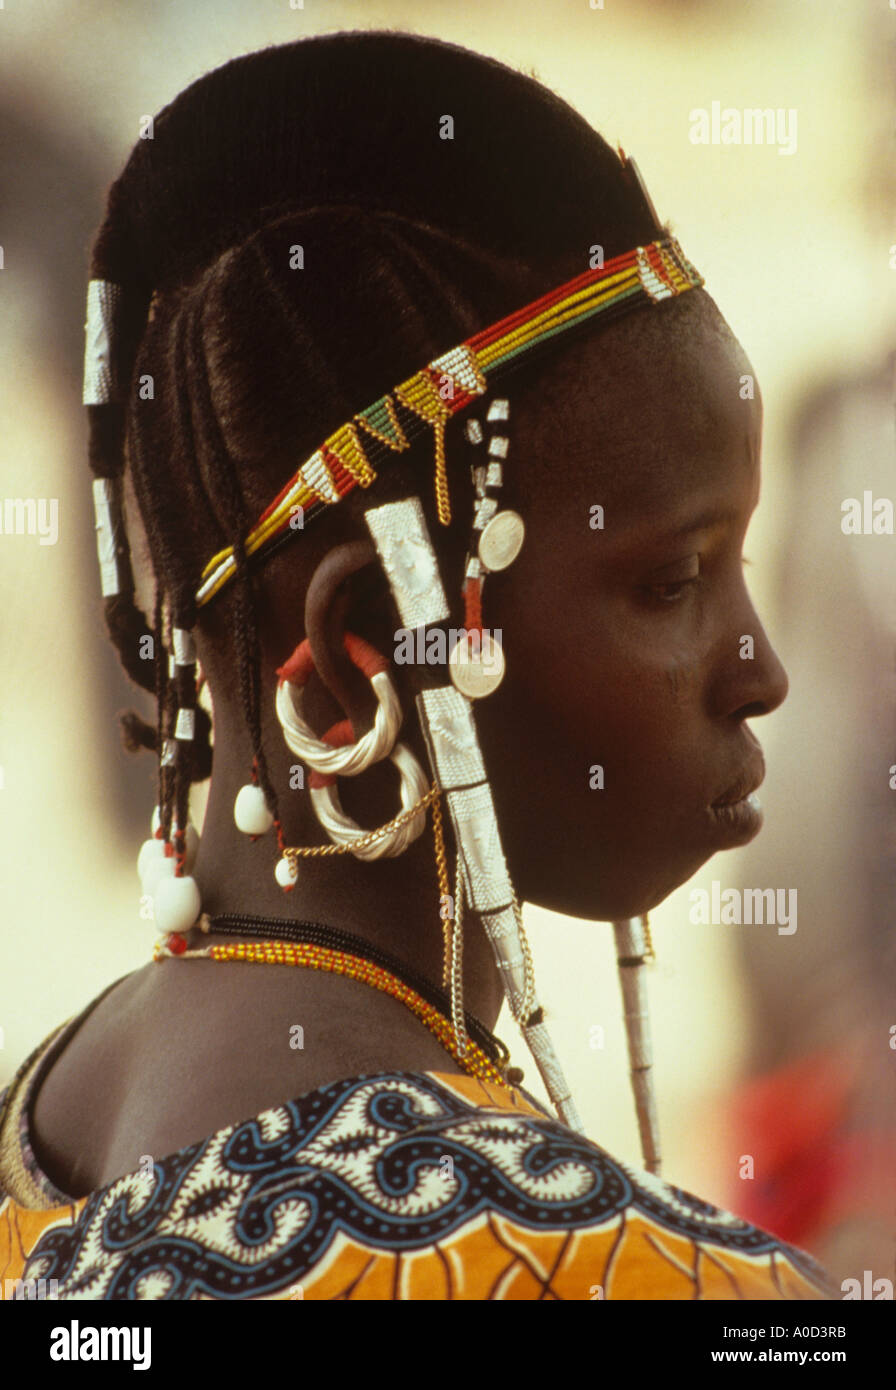 Femme peul porte des perles de verre et argent ornements dans les cheveux et les oreilles de l'Afrique de l'ouest du Burkina Faso Banque D'Images